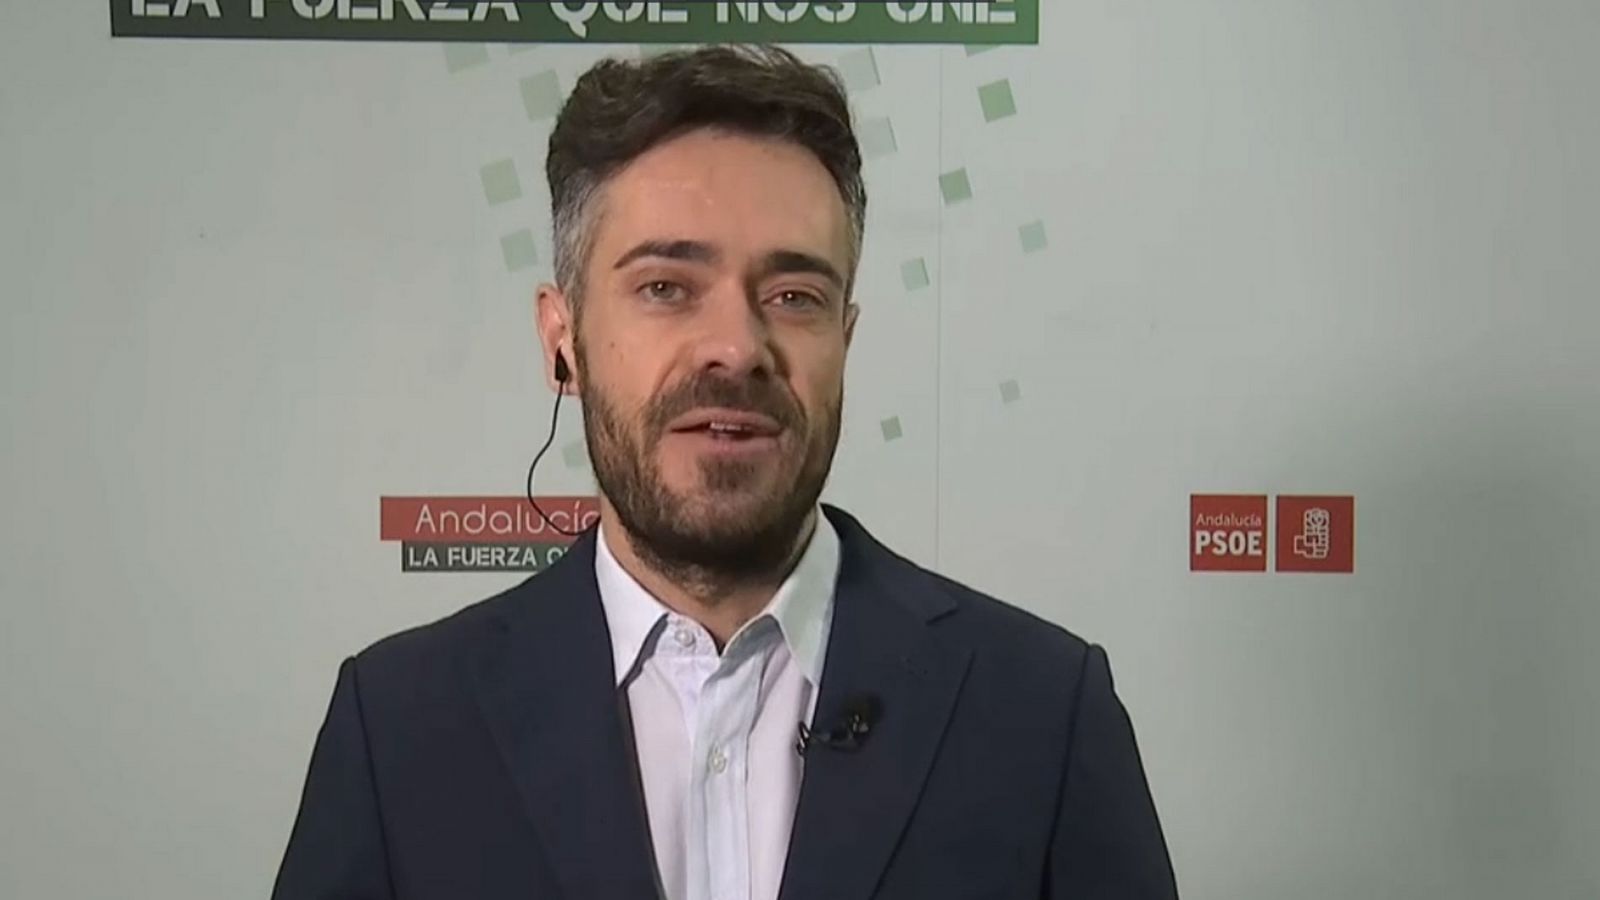 El PSOE entiende la cautela de Page y Lambán con el pacto con ERC y asegura que no traspasarán "líneas rojas" - RTVE.es